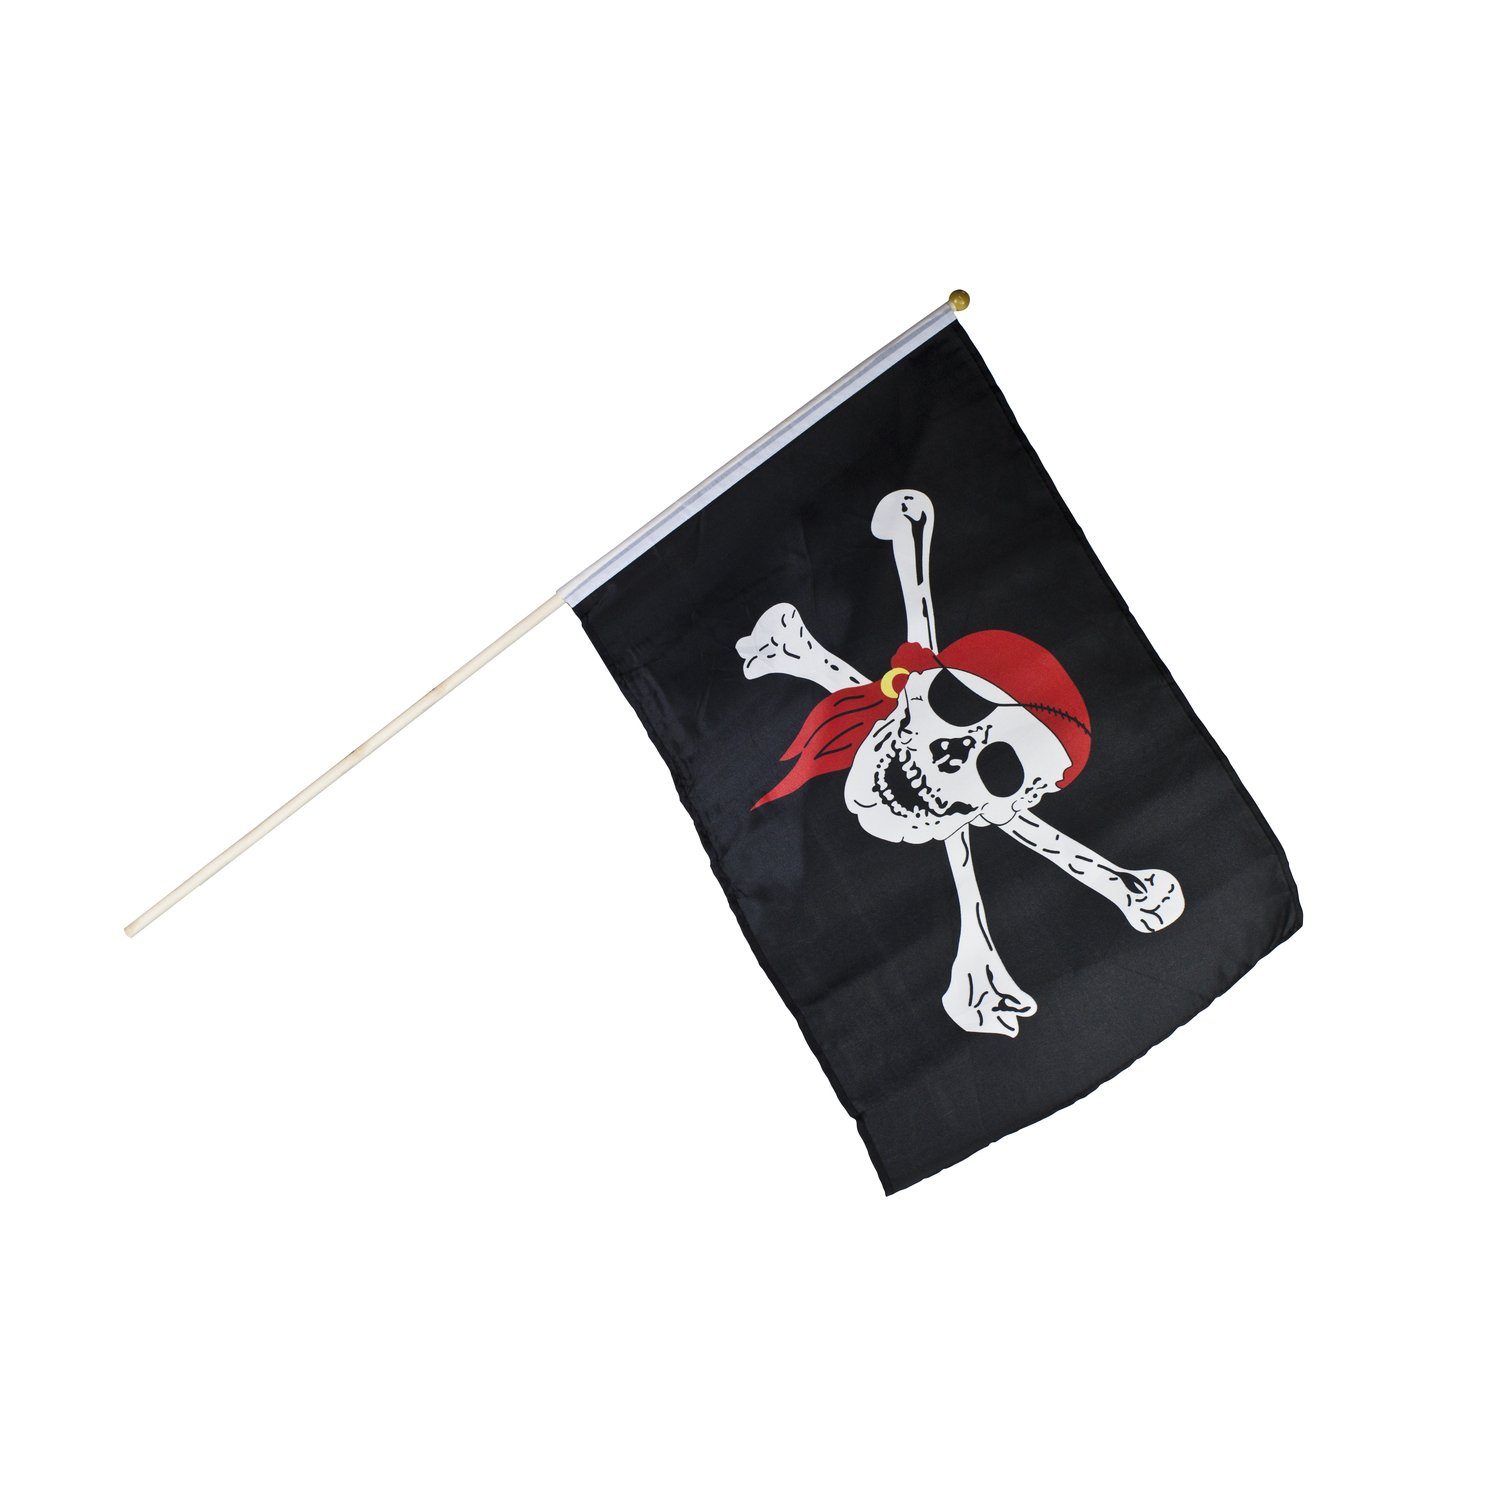 Schwarze Piratenflagge Piraten Flagge mit Totenkopf schwarz Zubehör Fahne  Freibeuter